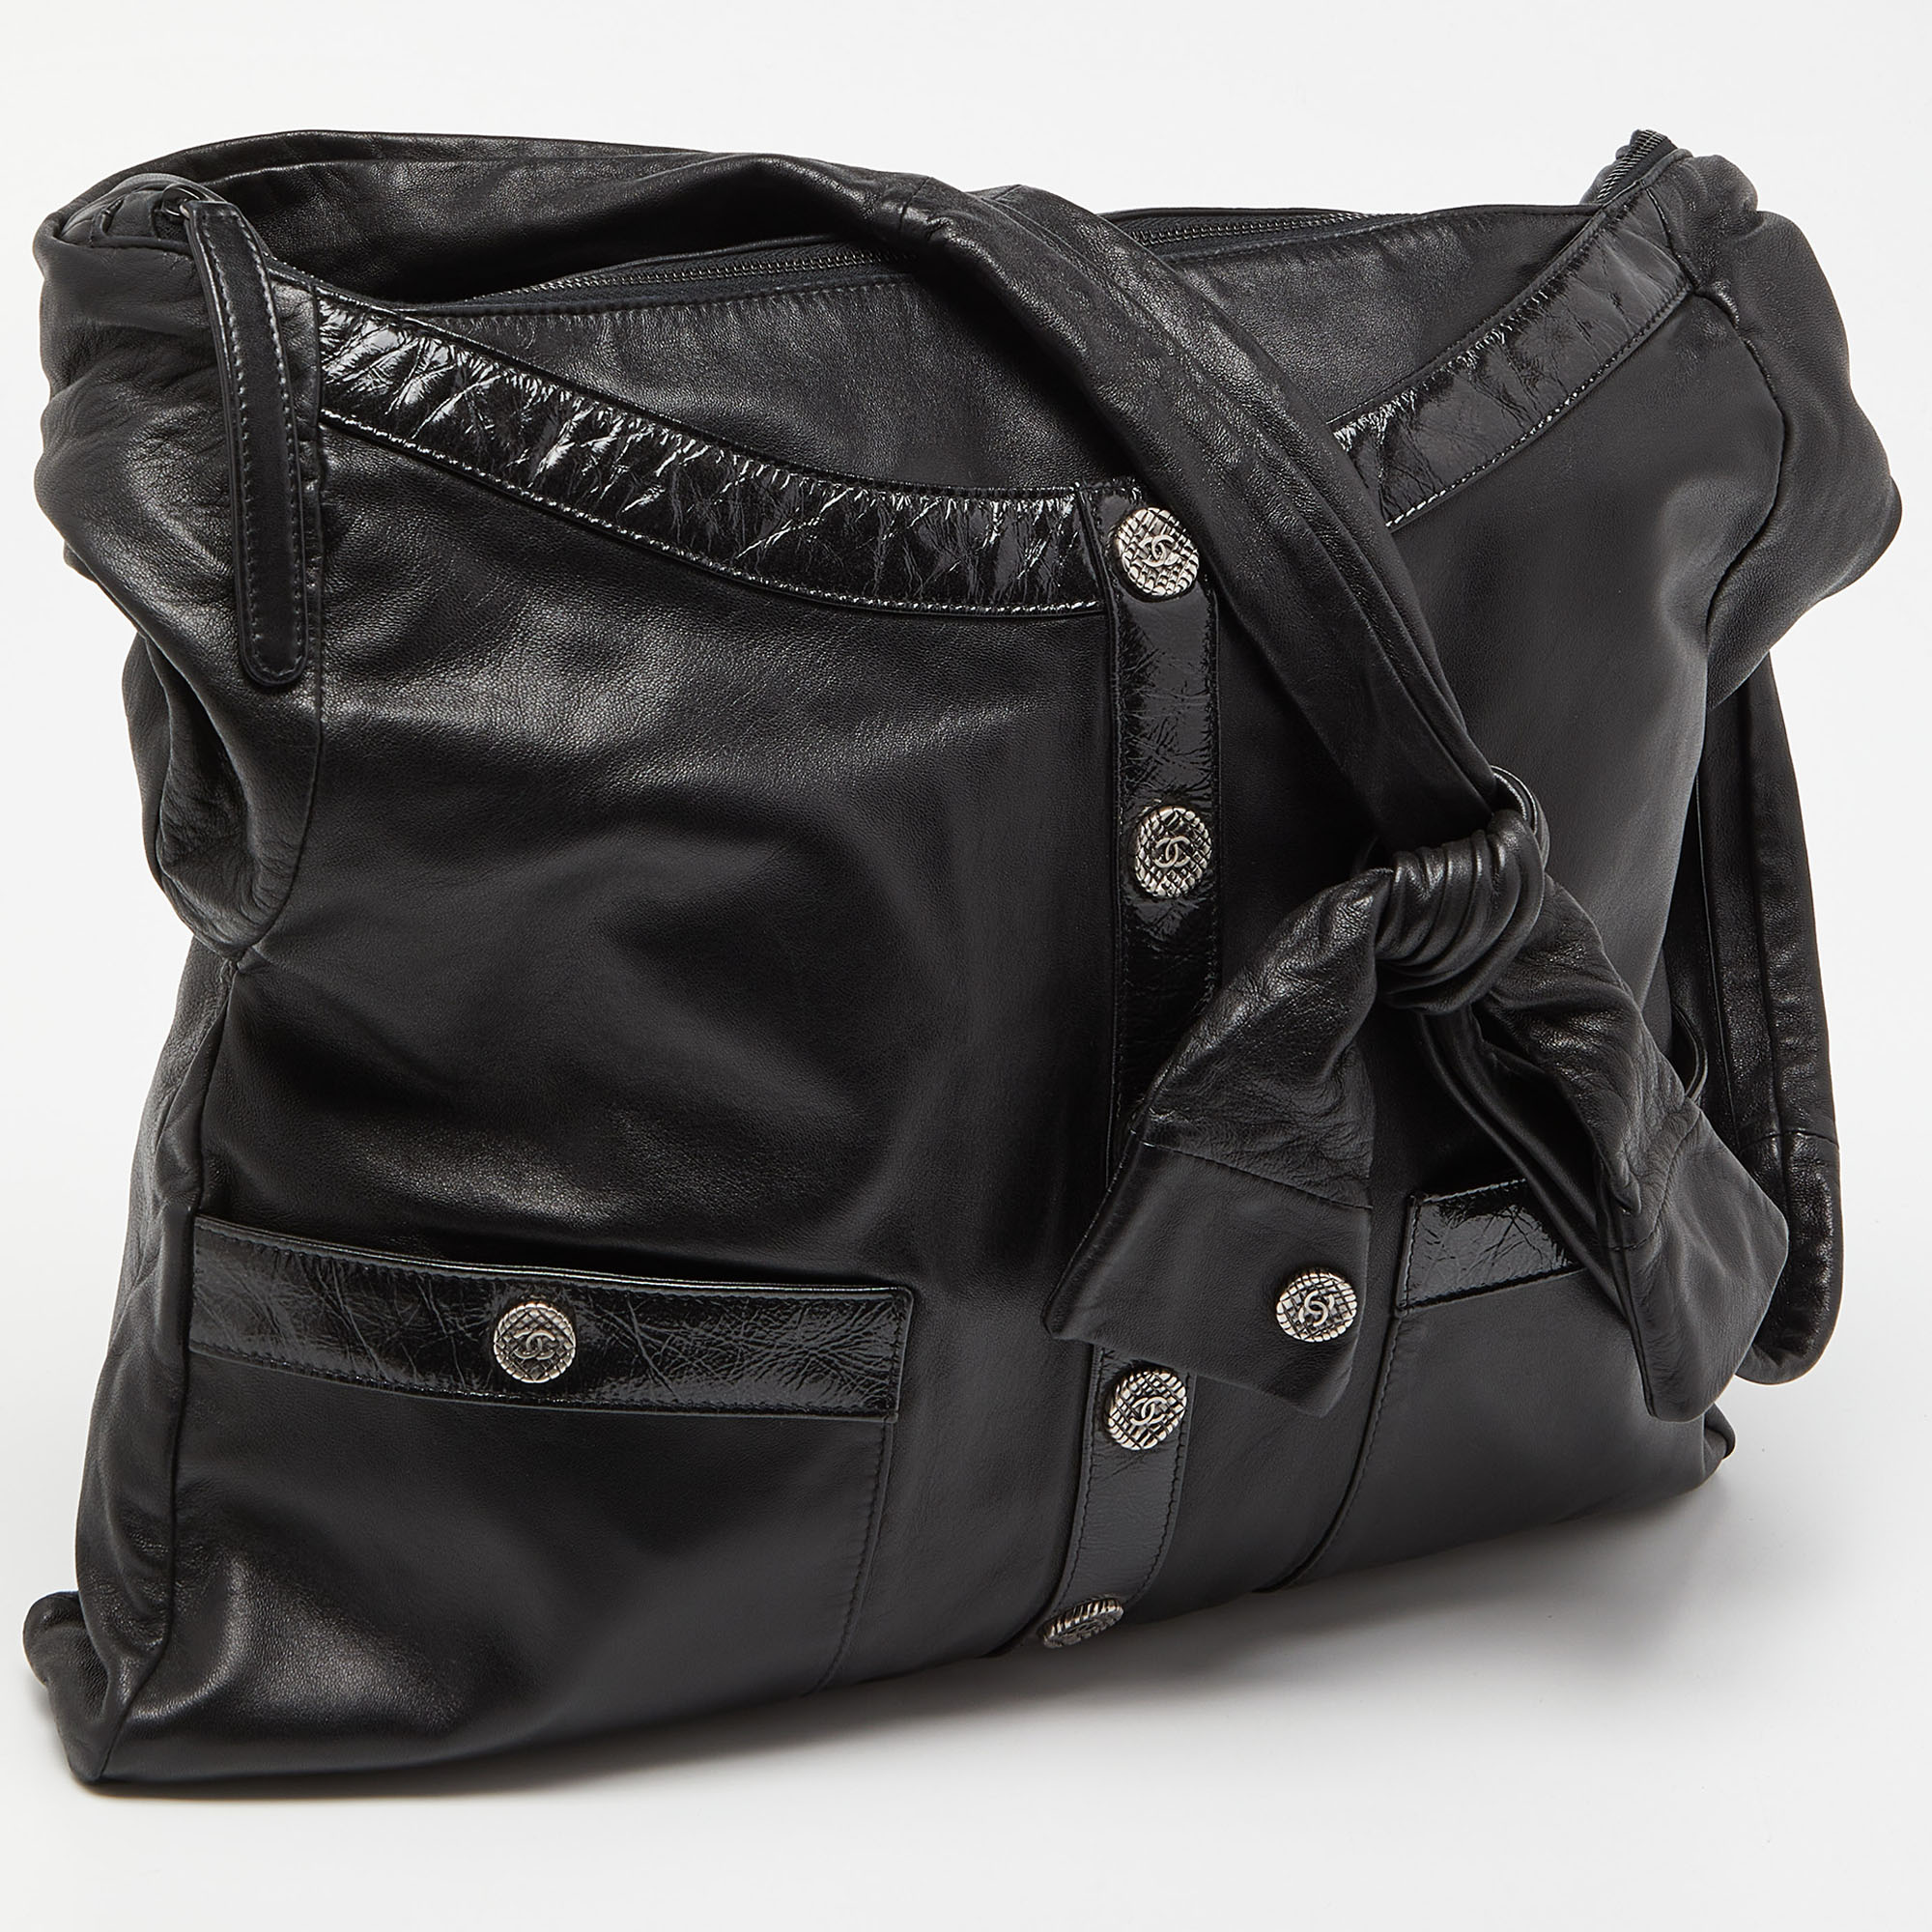 Chanel Black Leather Large Girl Chanel Bag